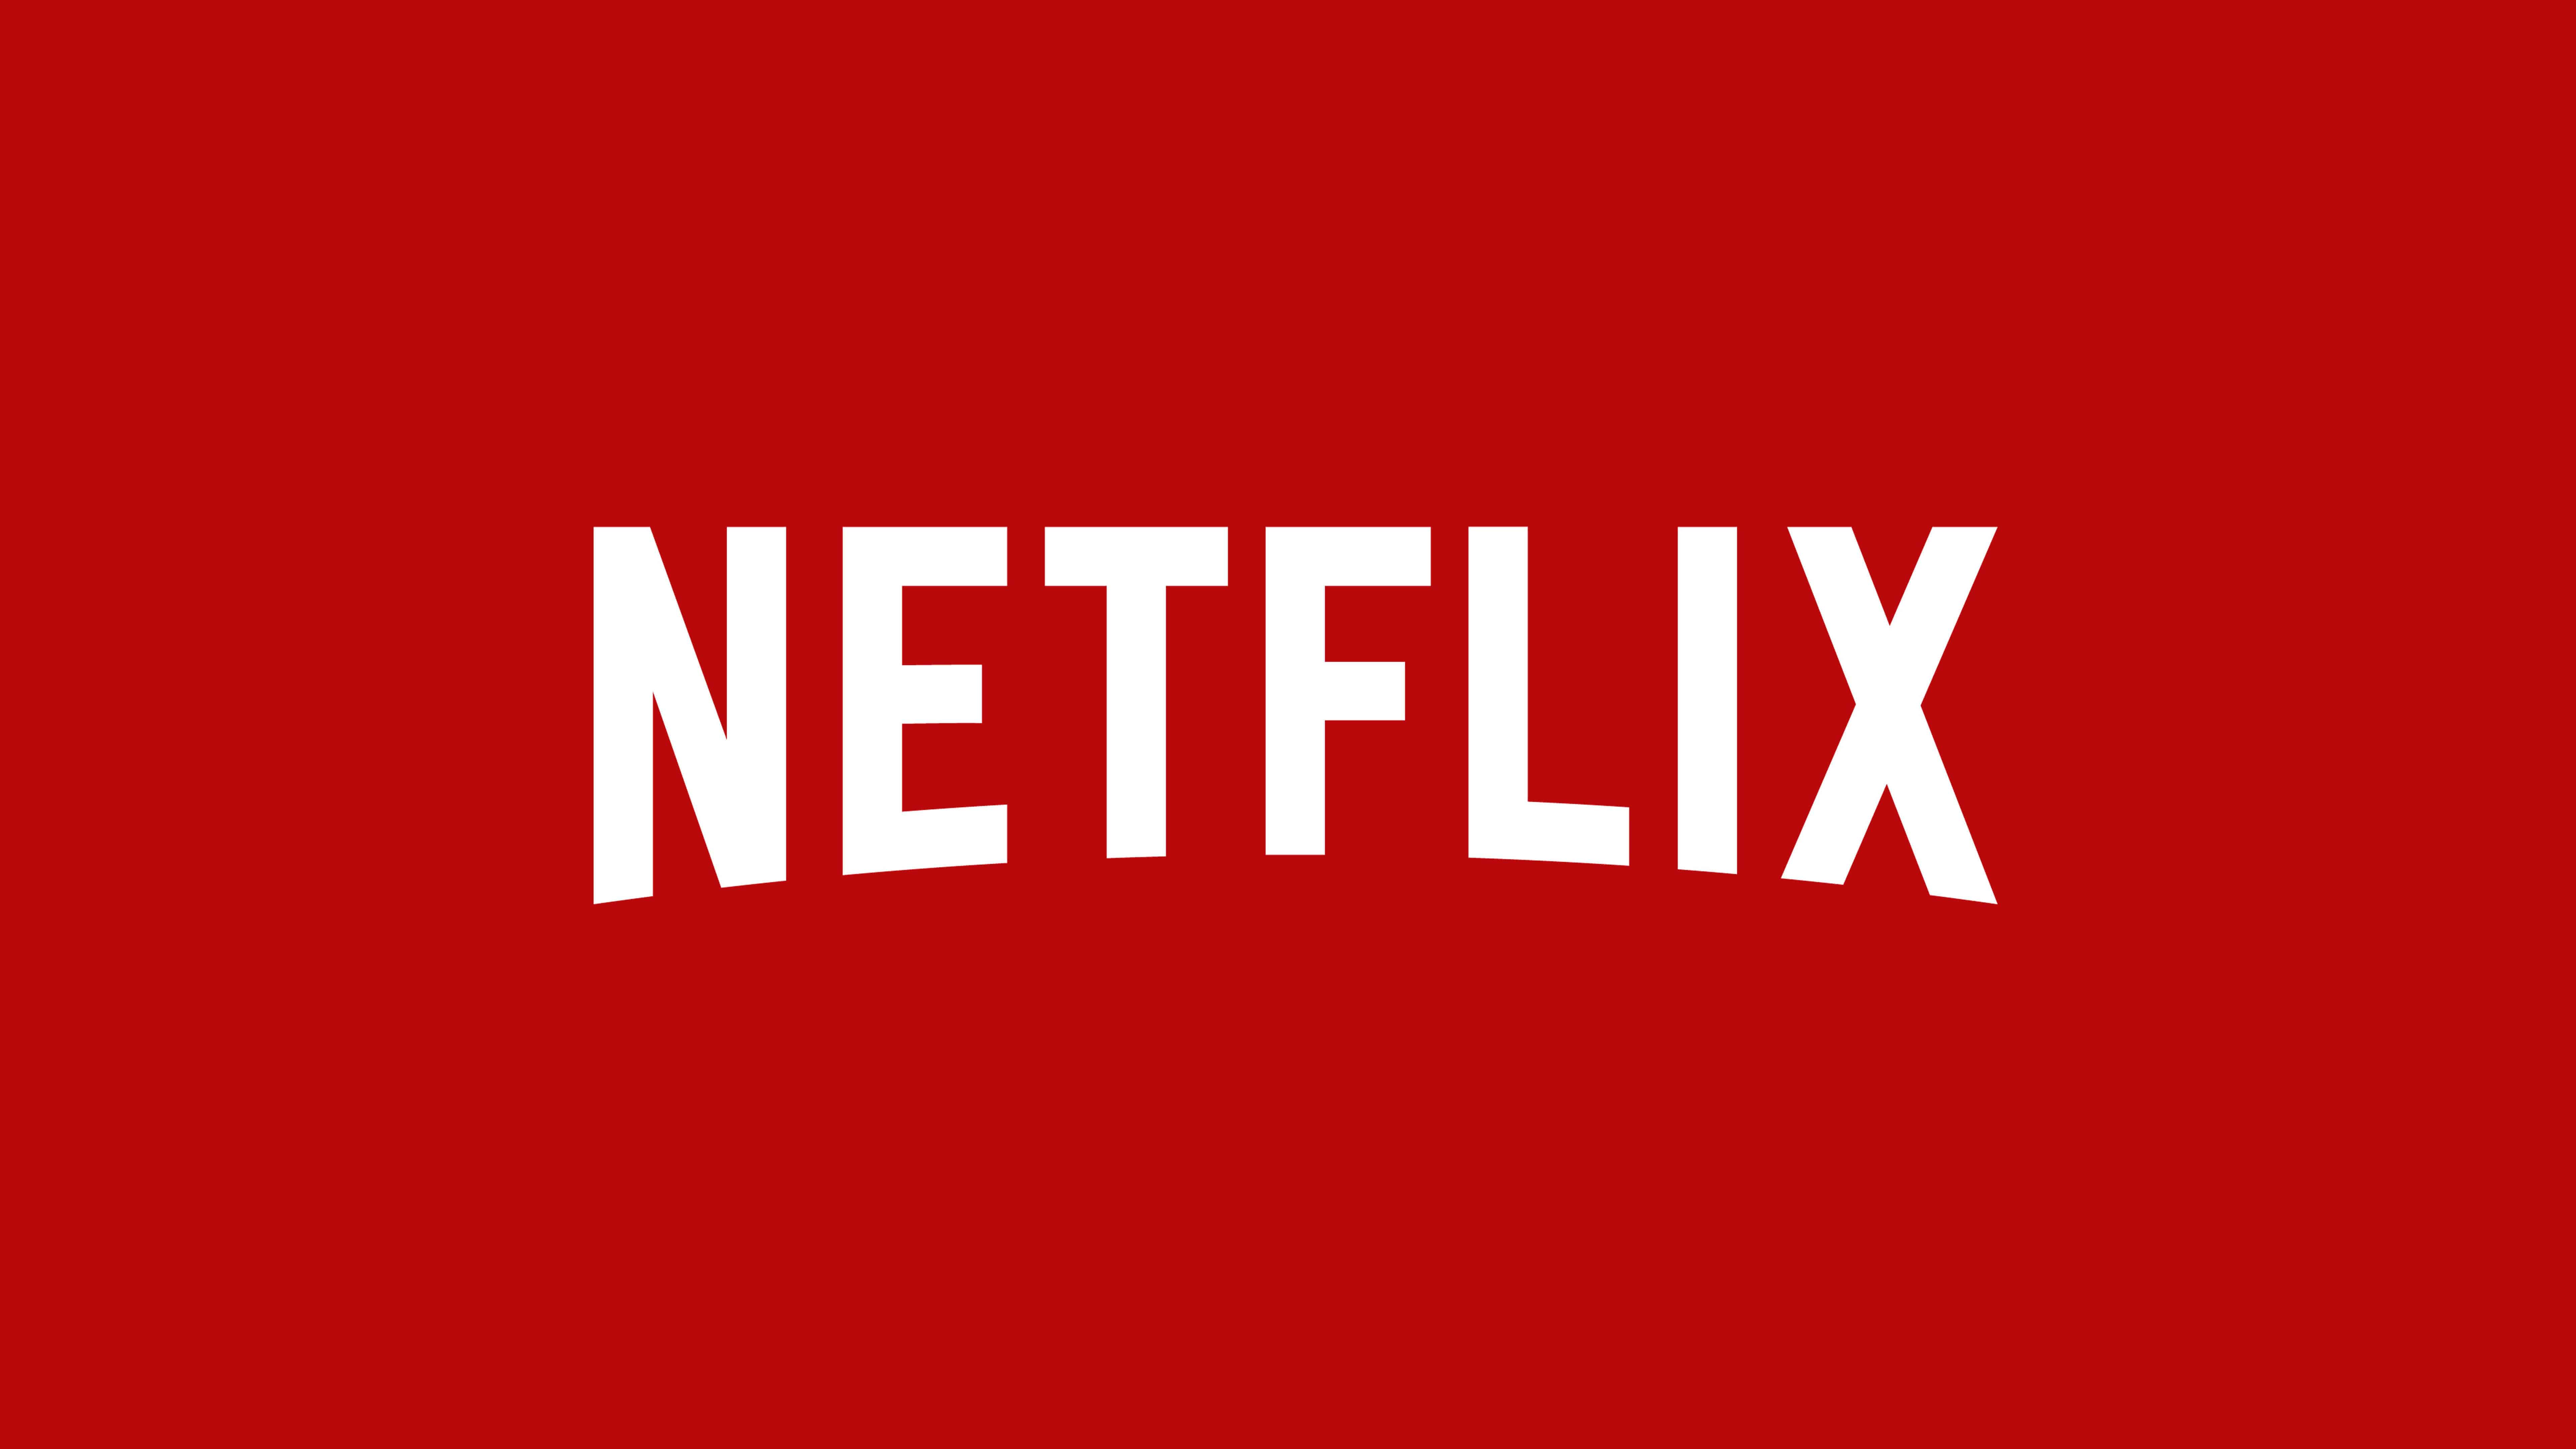 Netflix Logo UHD 8K Wallpaper Pixelz